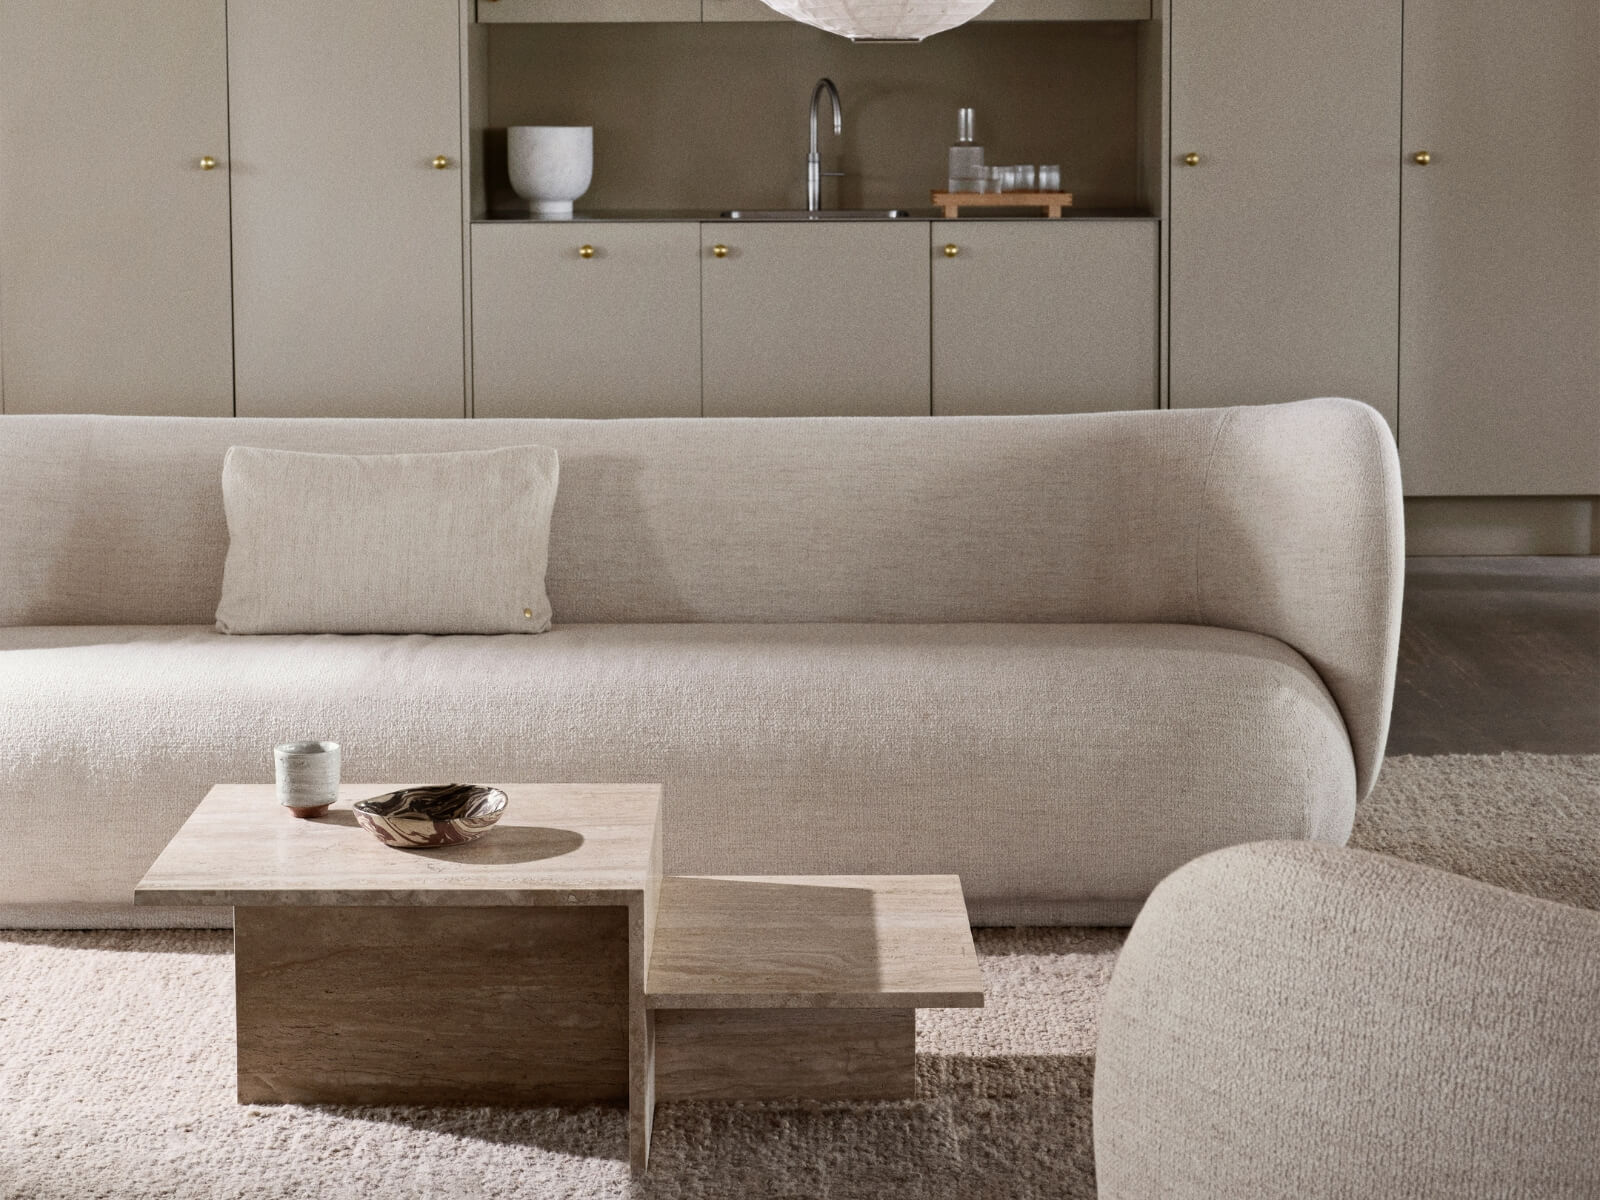 Dizajnová dlhá bledá sedačka v modernej obývačke s kuchyňou.